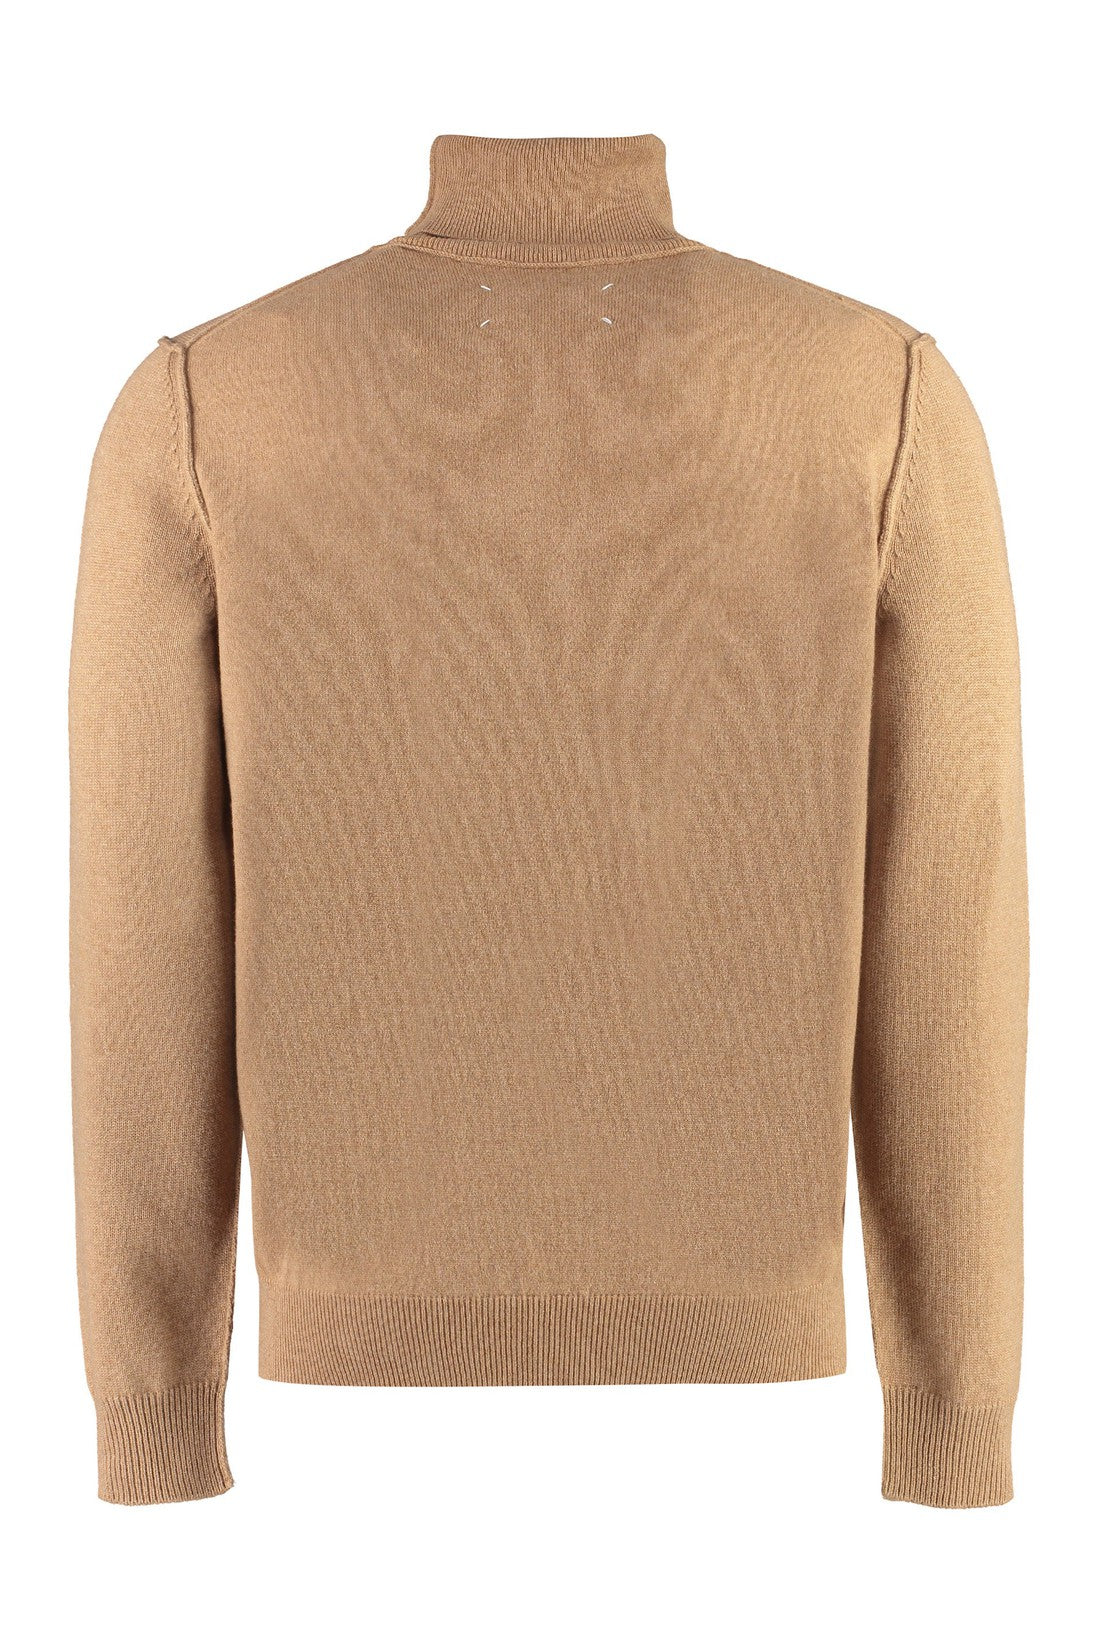 Maison Margiela-OUTLET-SALE-Cashmere turtleneck sweater-ARCHIVIST